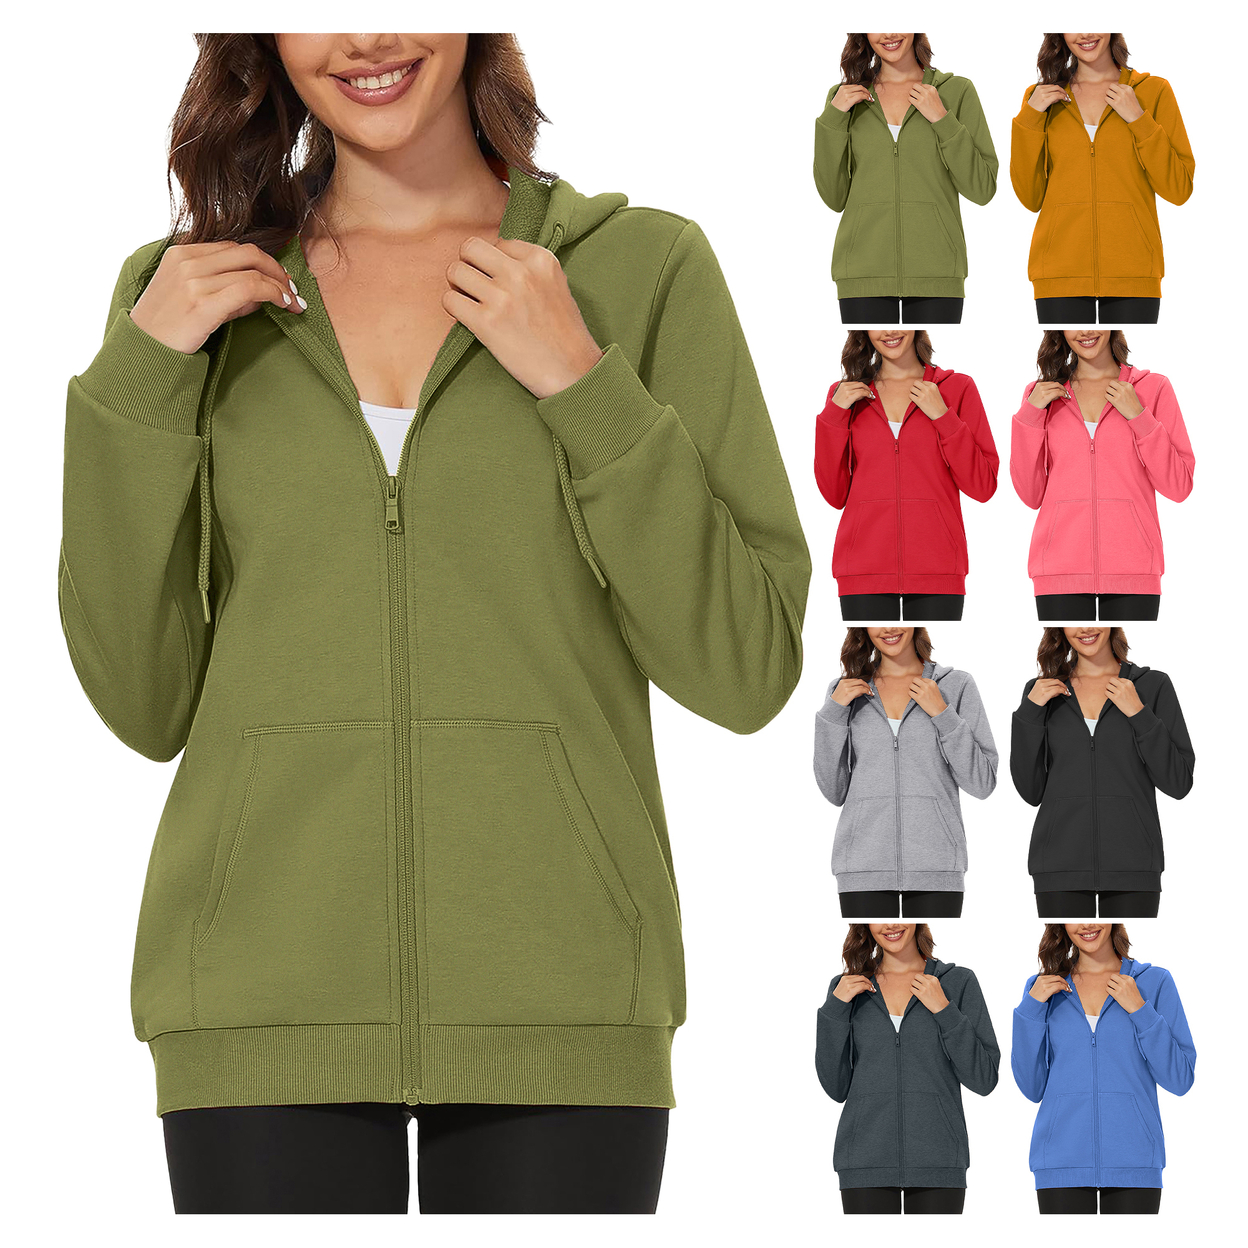 2-Pack: Women's Winter Warm Soft Blend Fleece Lined Full Zip Up Hoodies - Small